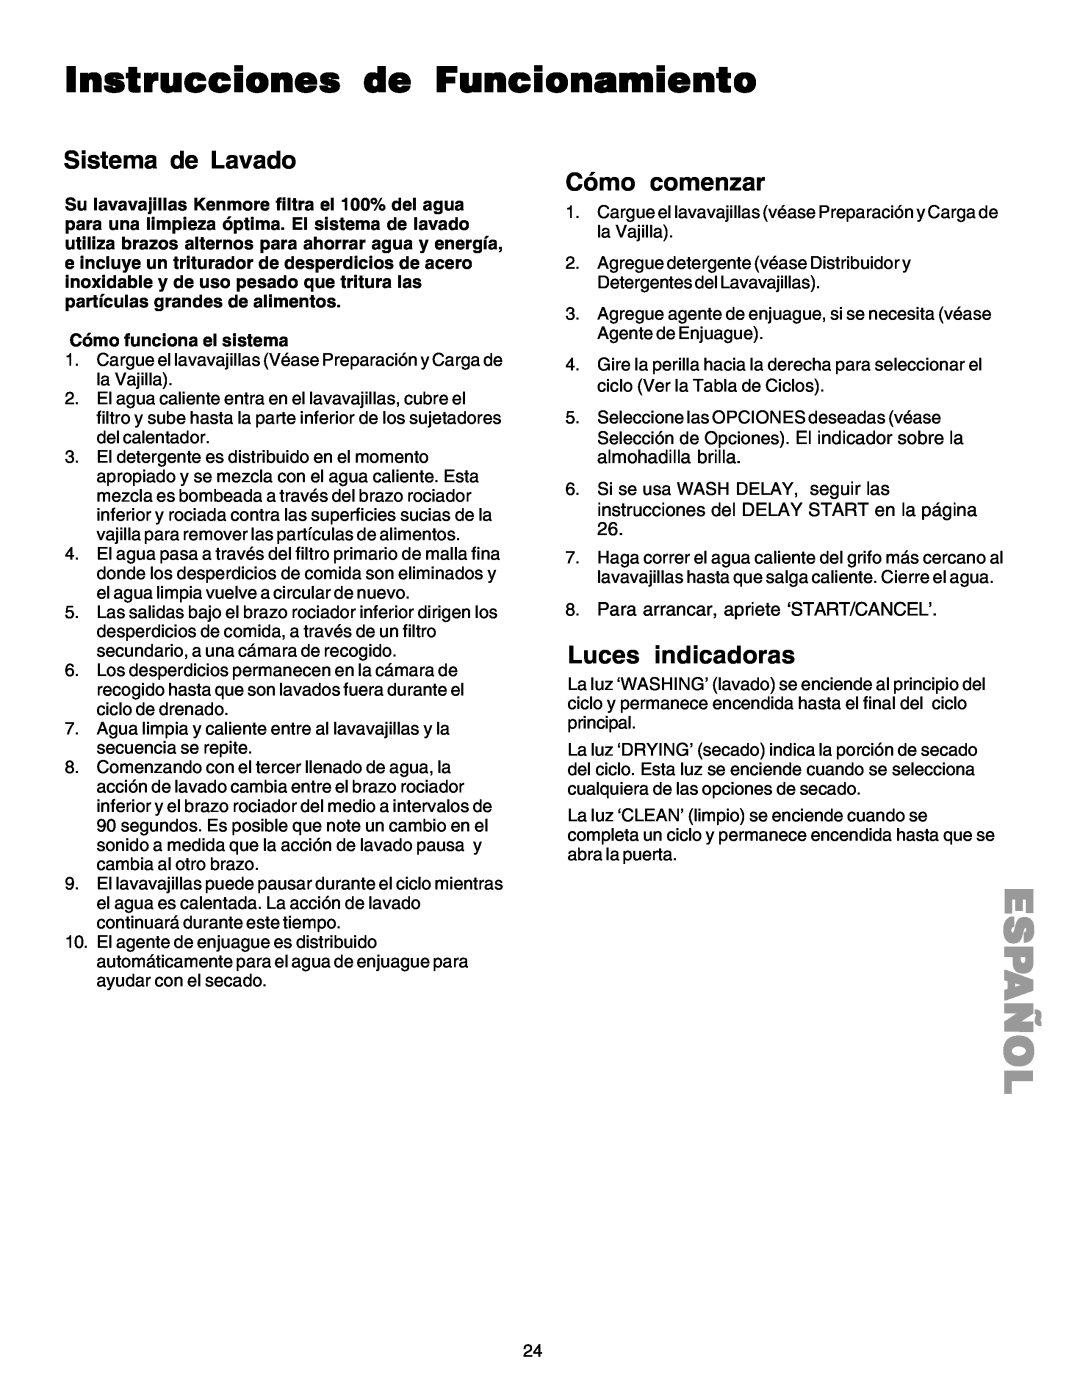 Kenmore 587.1523 manual Instrucciones de Funcionamiento, Sistema de Lavado, Cómo comenzar, Luces indicadoras, Español 